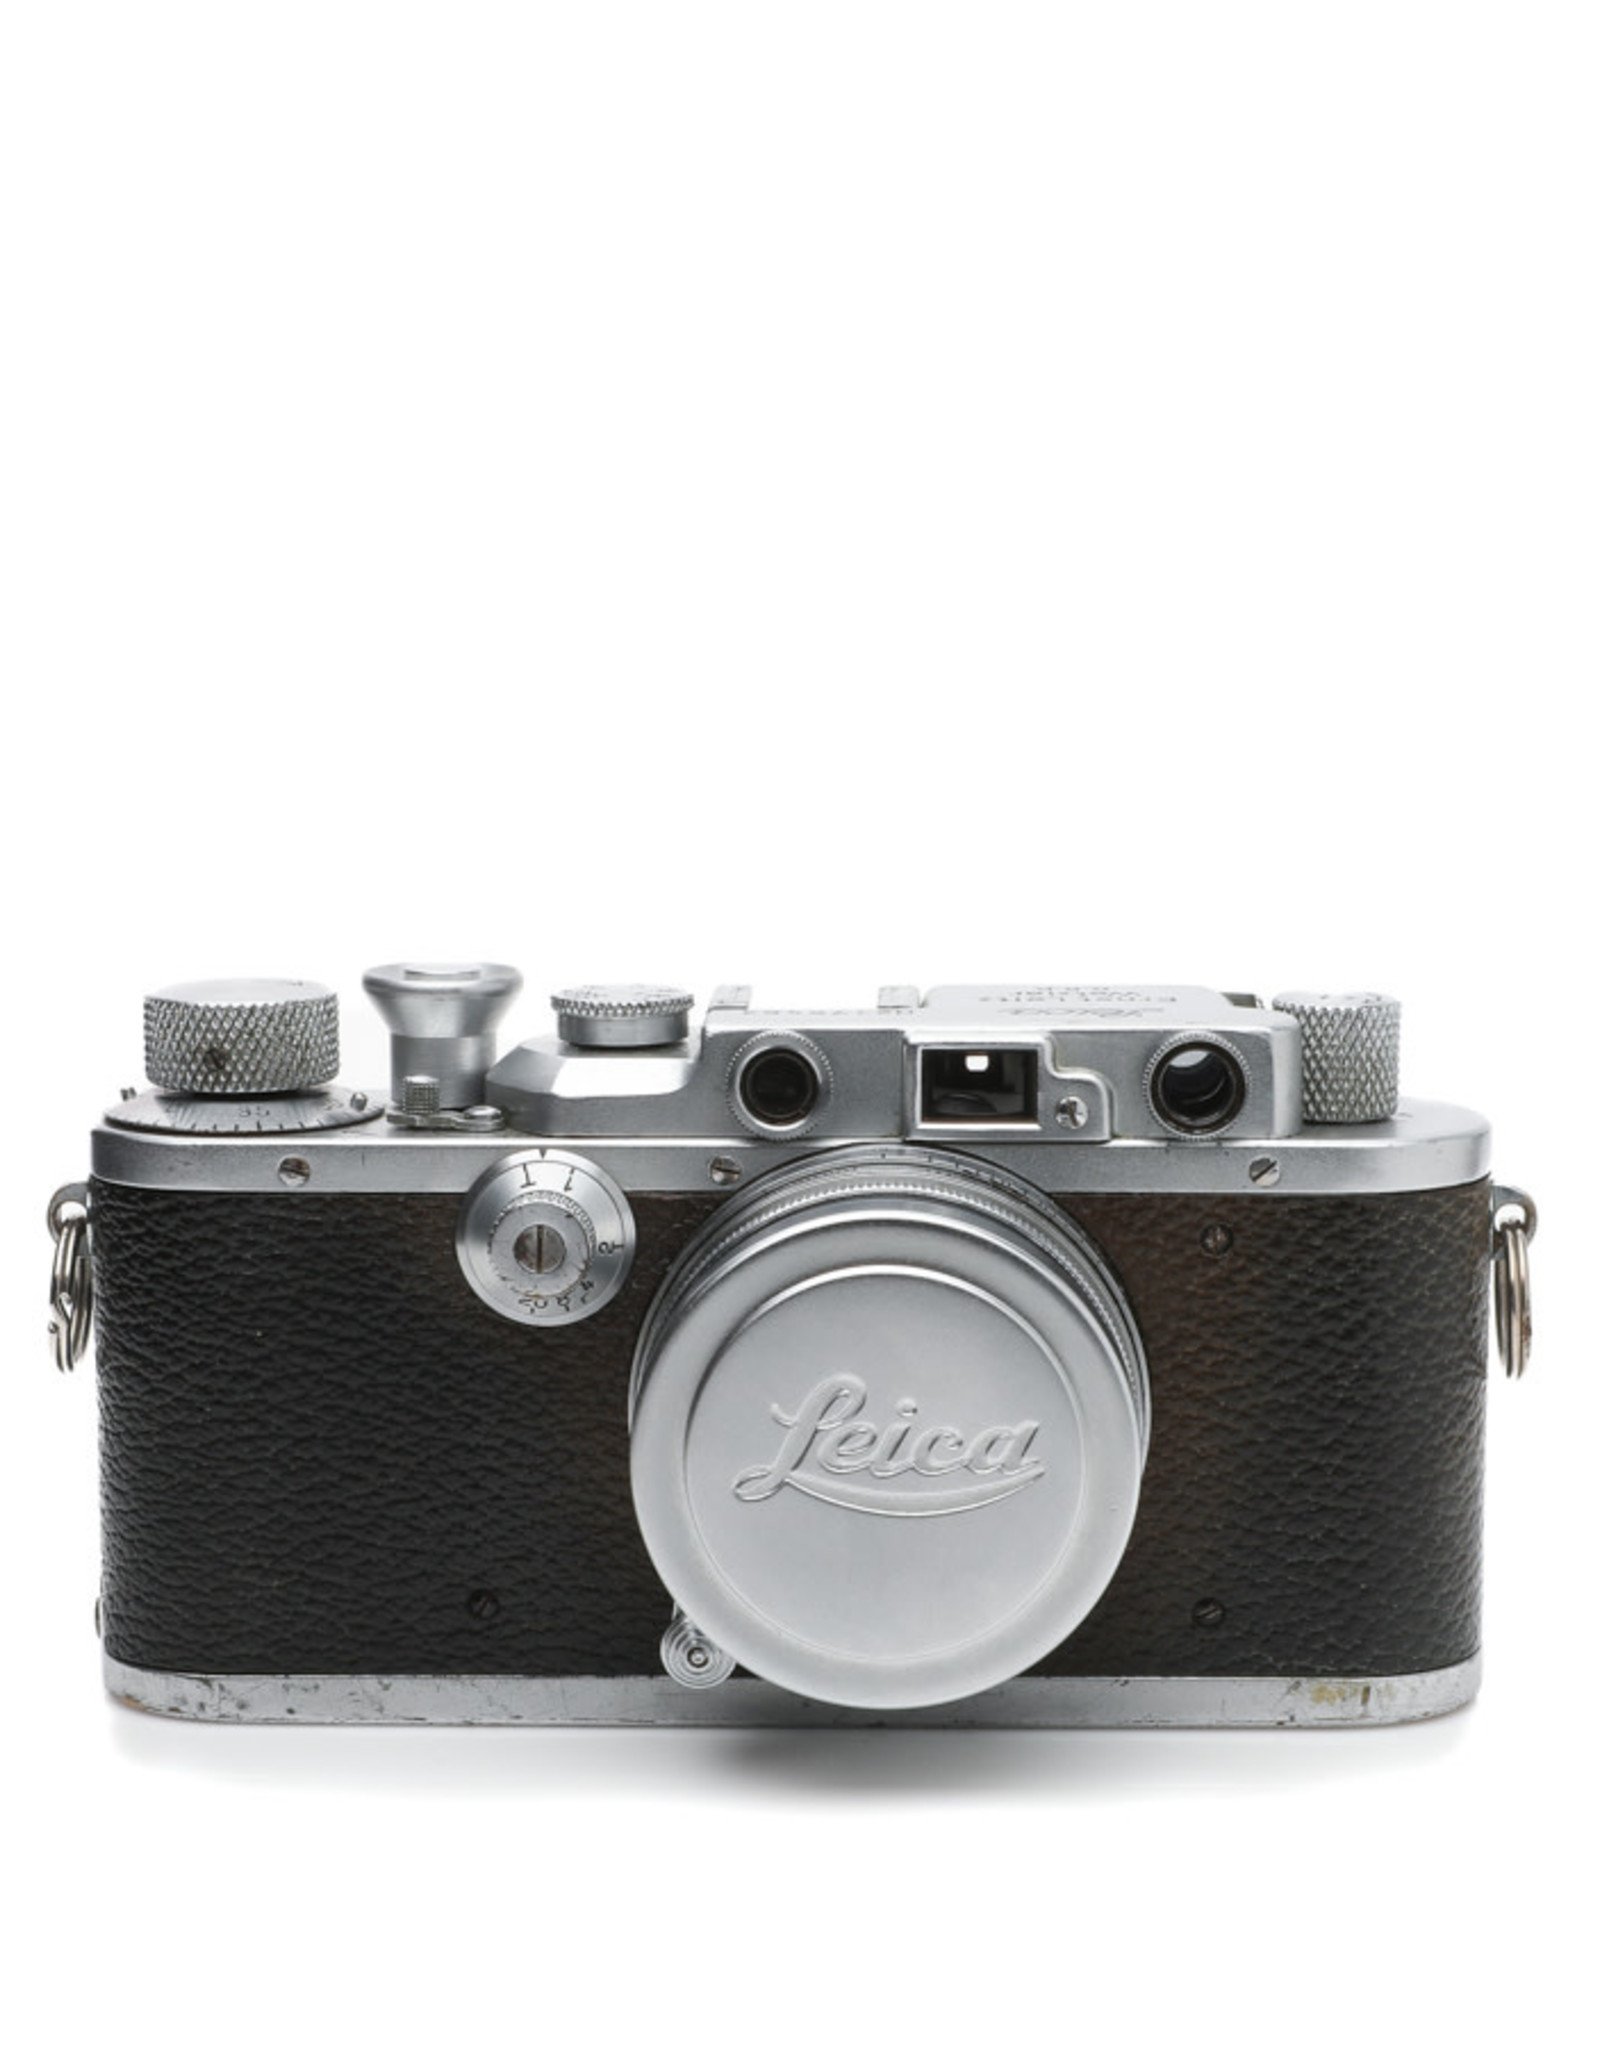 Leica LEICA III 35mm Rangefinder Camera w/5cm Summitar f2 Lens